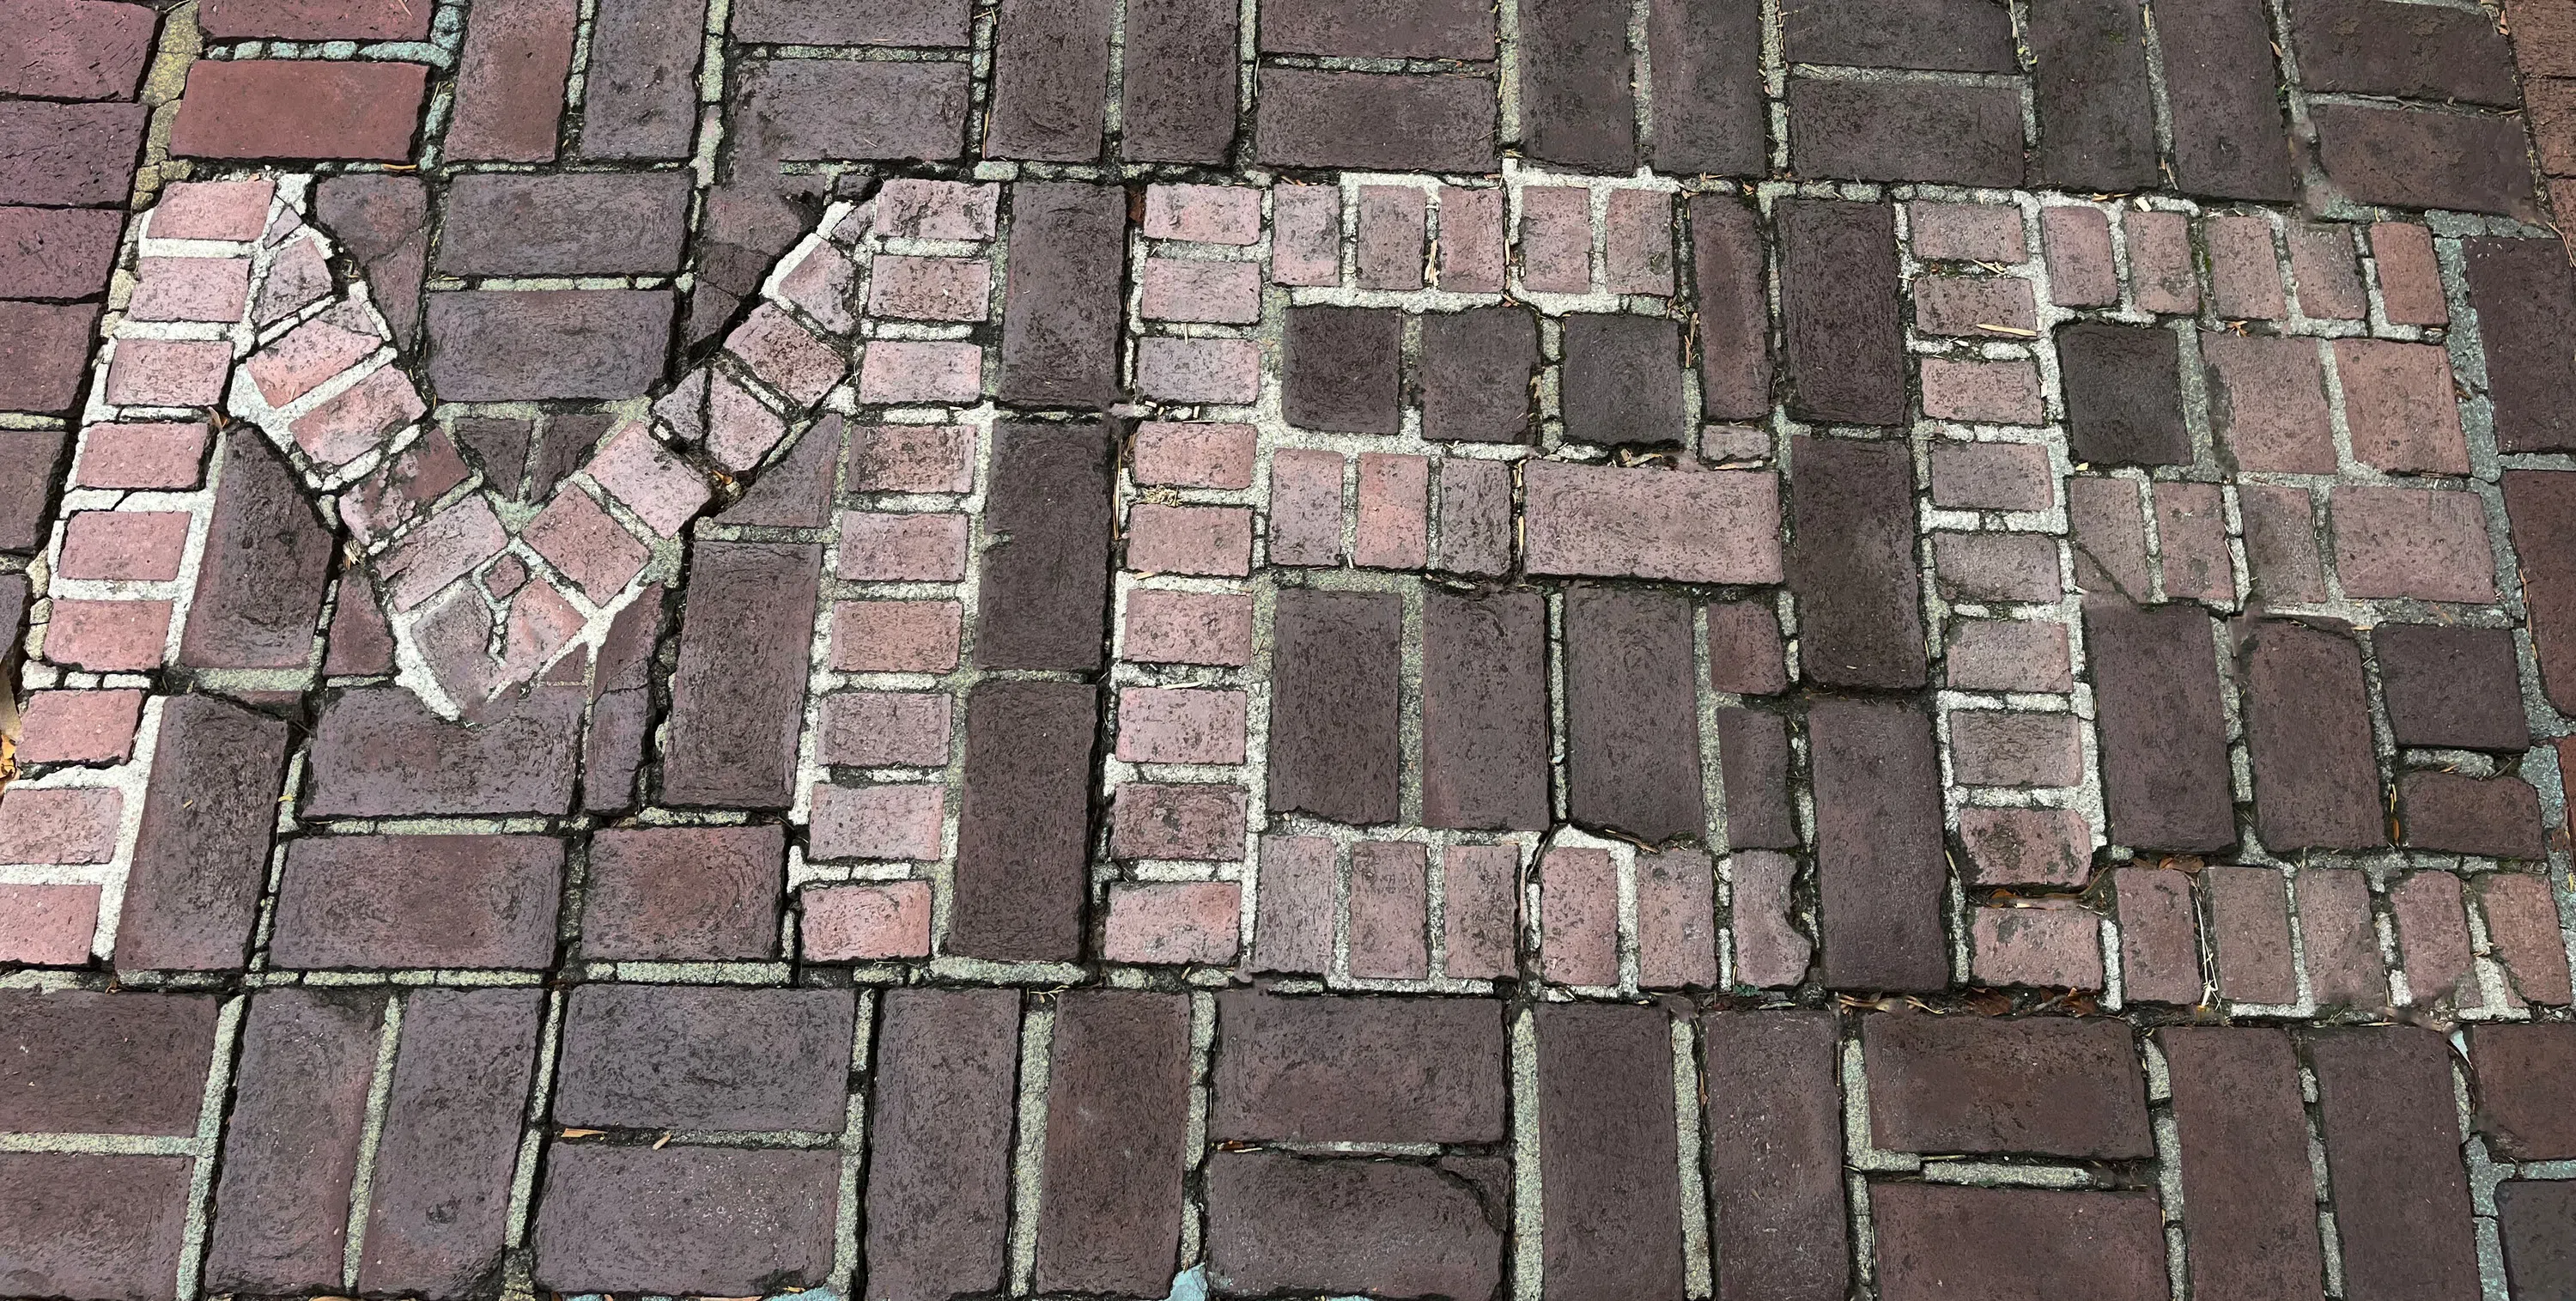 Bricks in tribute 